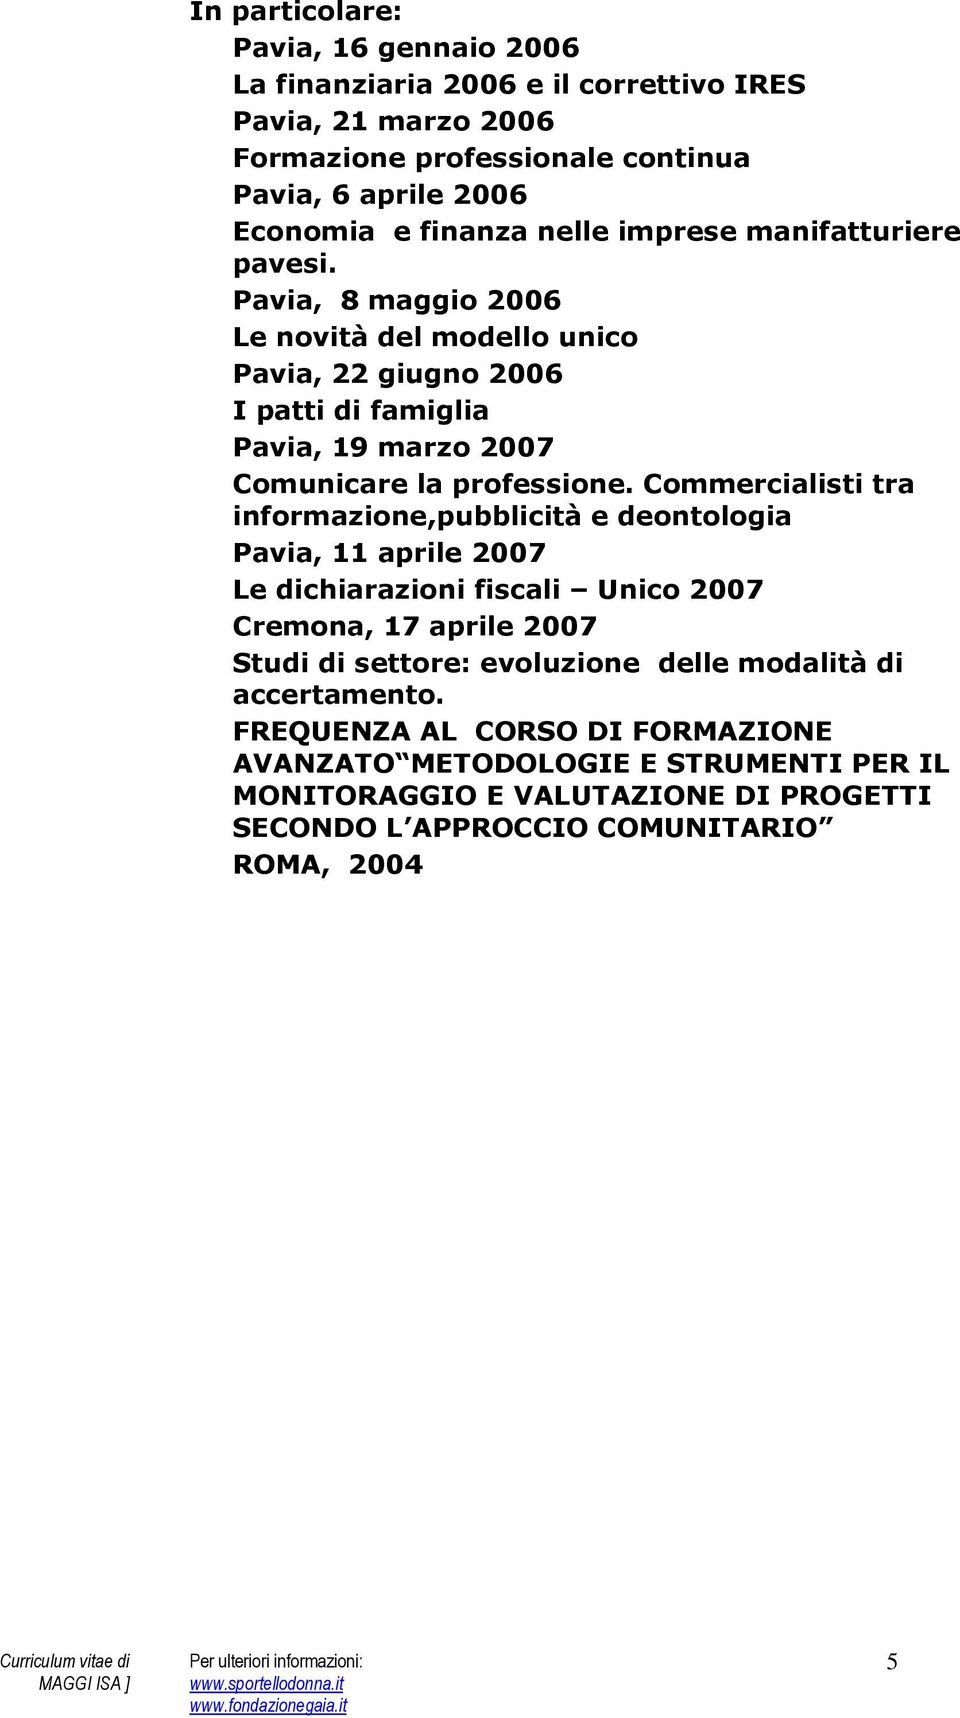 Commercialisti tra informazione,pubblicità e deontologia Pavia, 11 aprile 2007 Le dichiarazioni fiscali Unico 2007 Cremona, 17 aprile 2007 Studi di settore: evoluzione delle